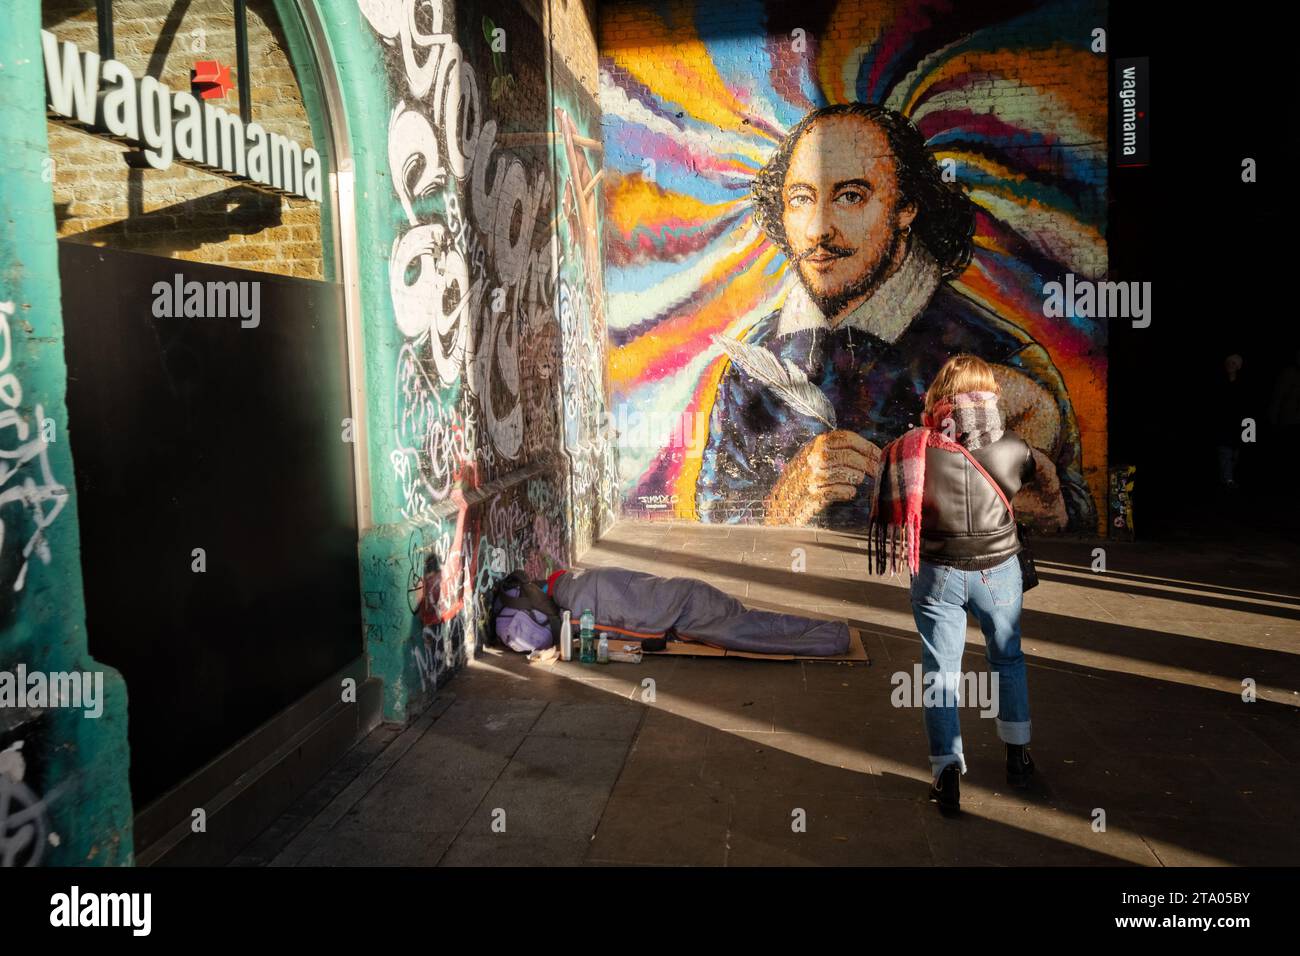 Un turista fotografiando un gran mural de William Shakespeare en Southbank de Londres. La obra está al lado de un restaurante Wagamama Foto de stock